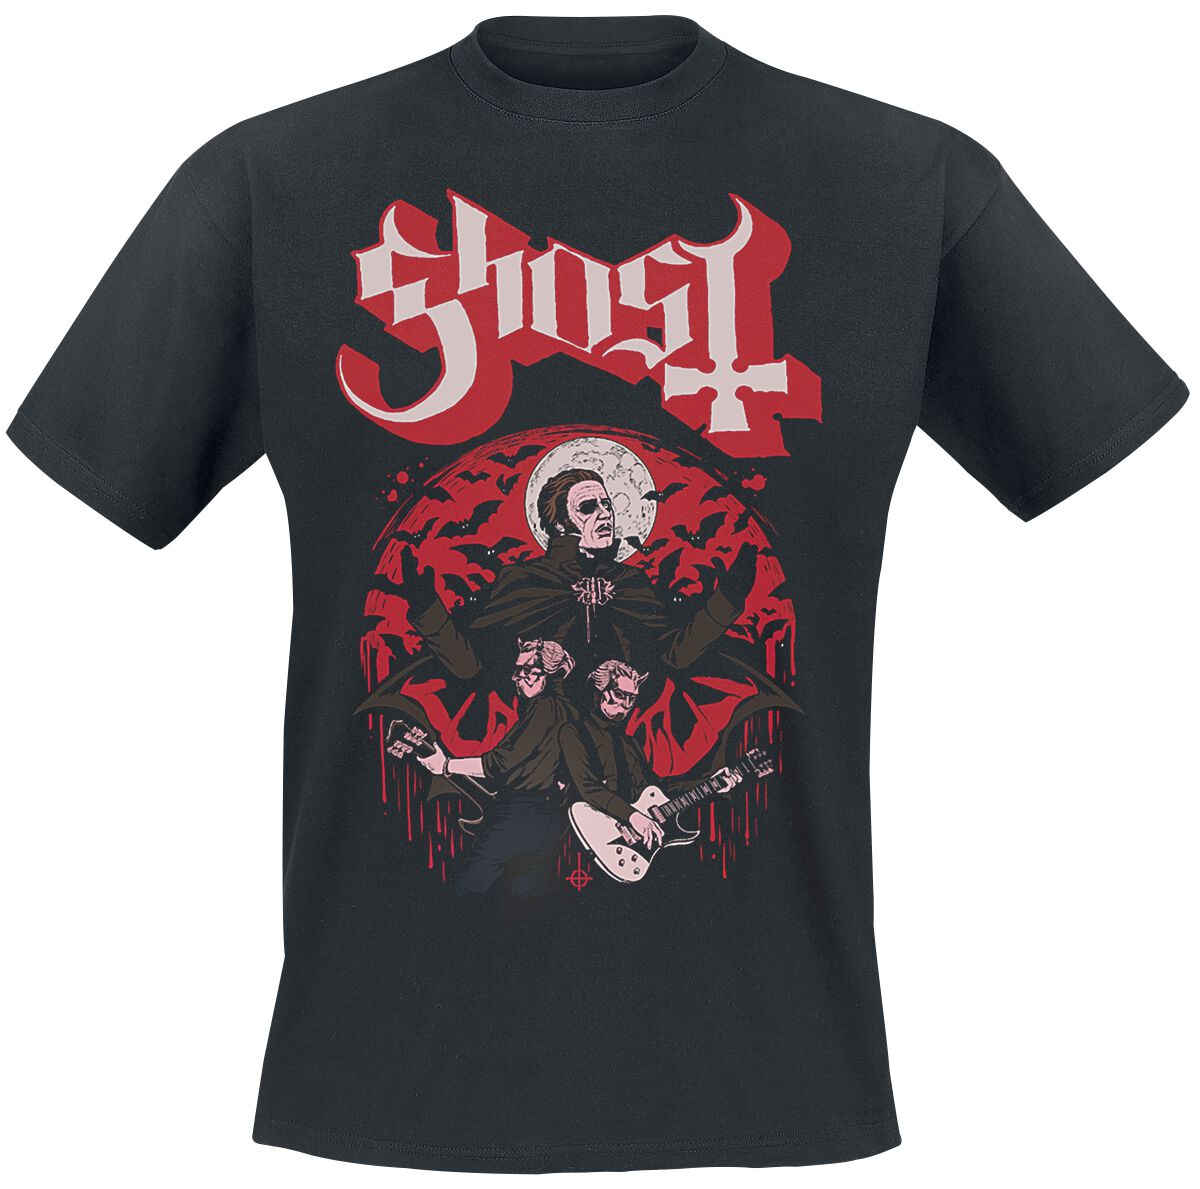 Ghost T-Shirt - Guitars - S bis 5XL - für Männer - Größe XXL - schwarz  - Lizenziertes Merchandise!